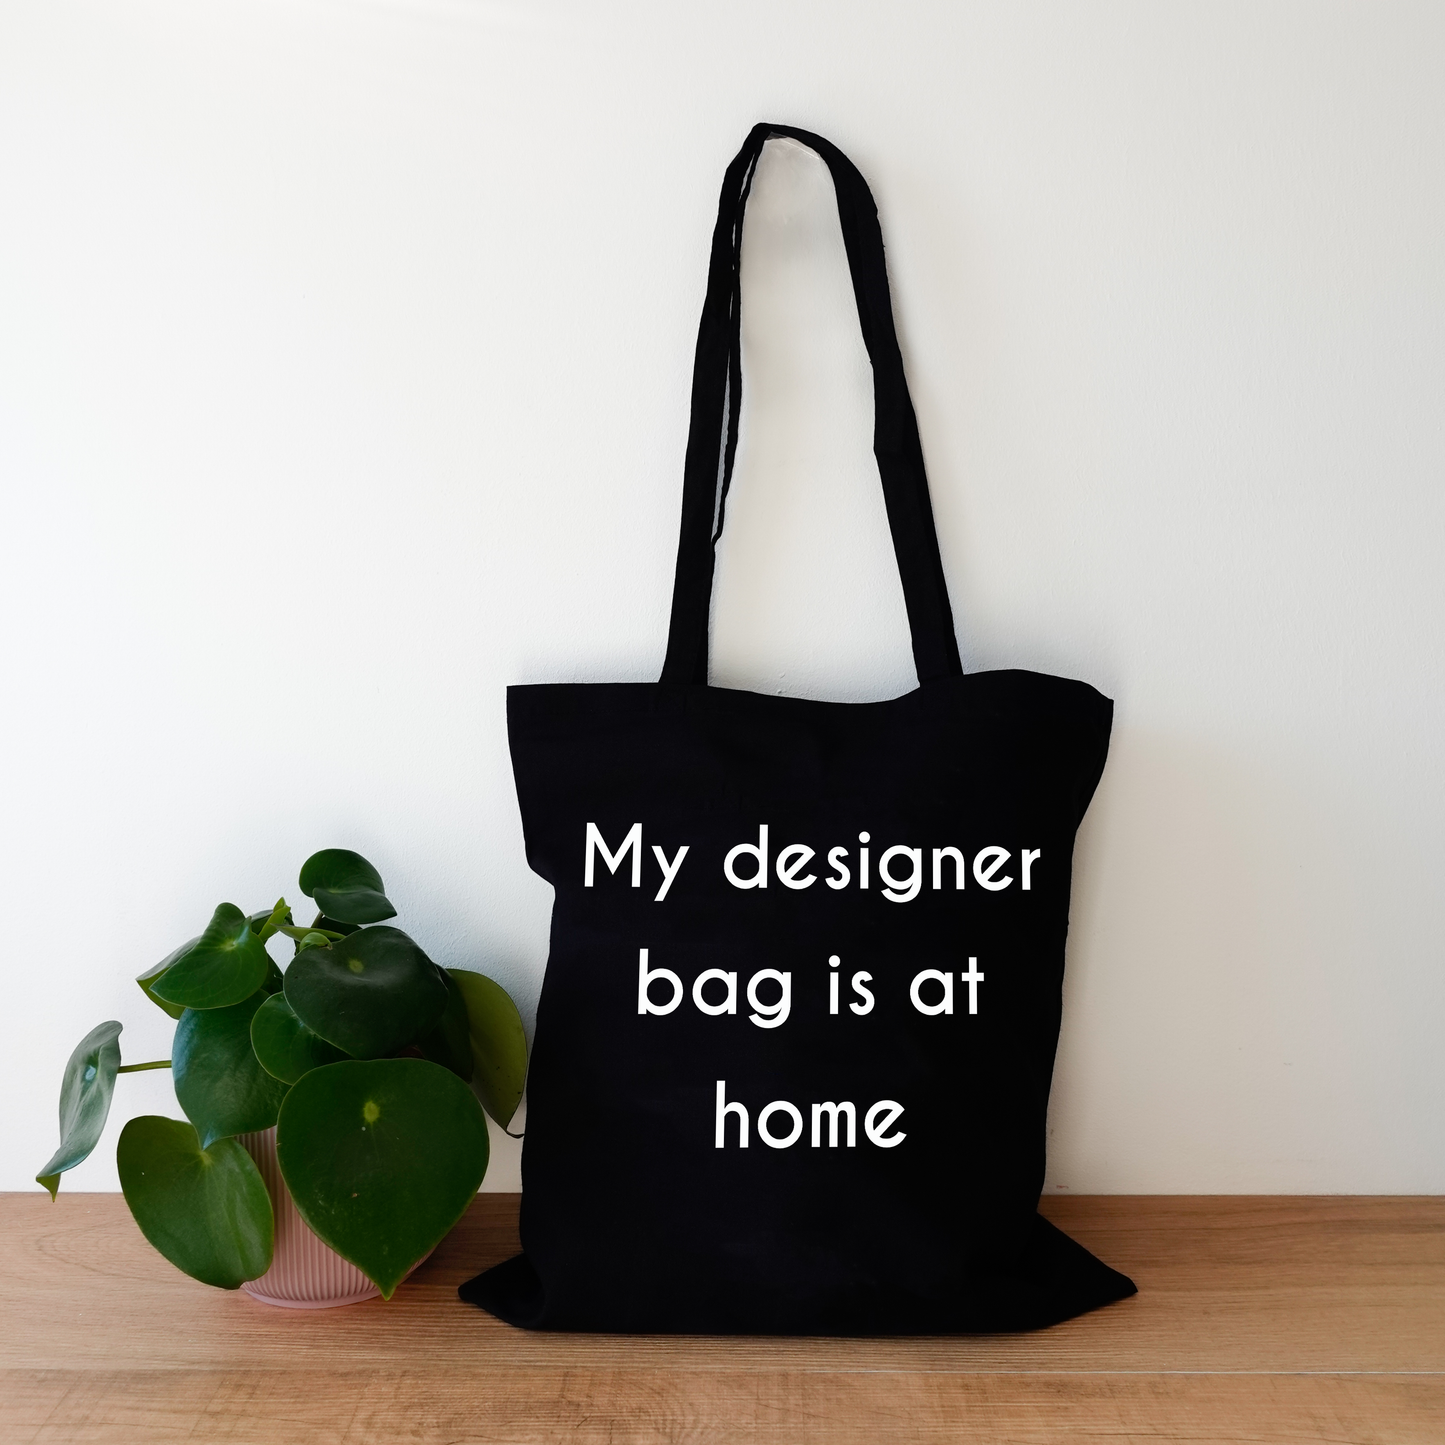 Tote bag - My designer bag is at home